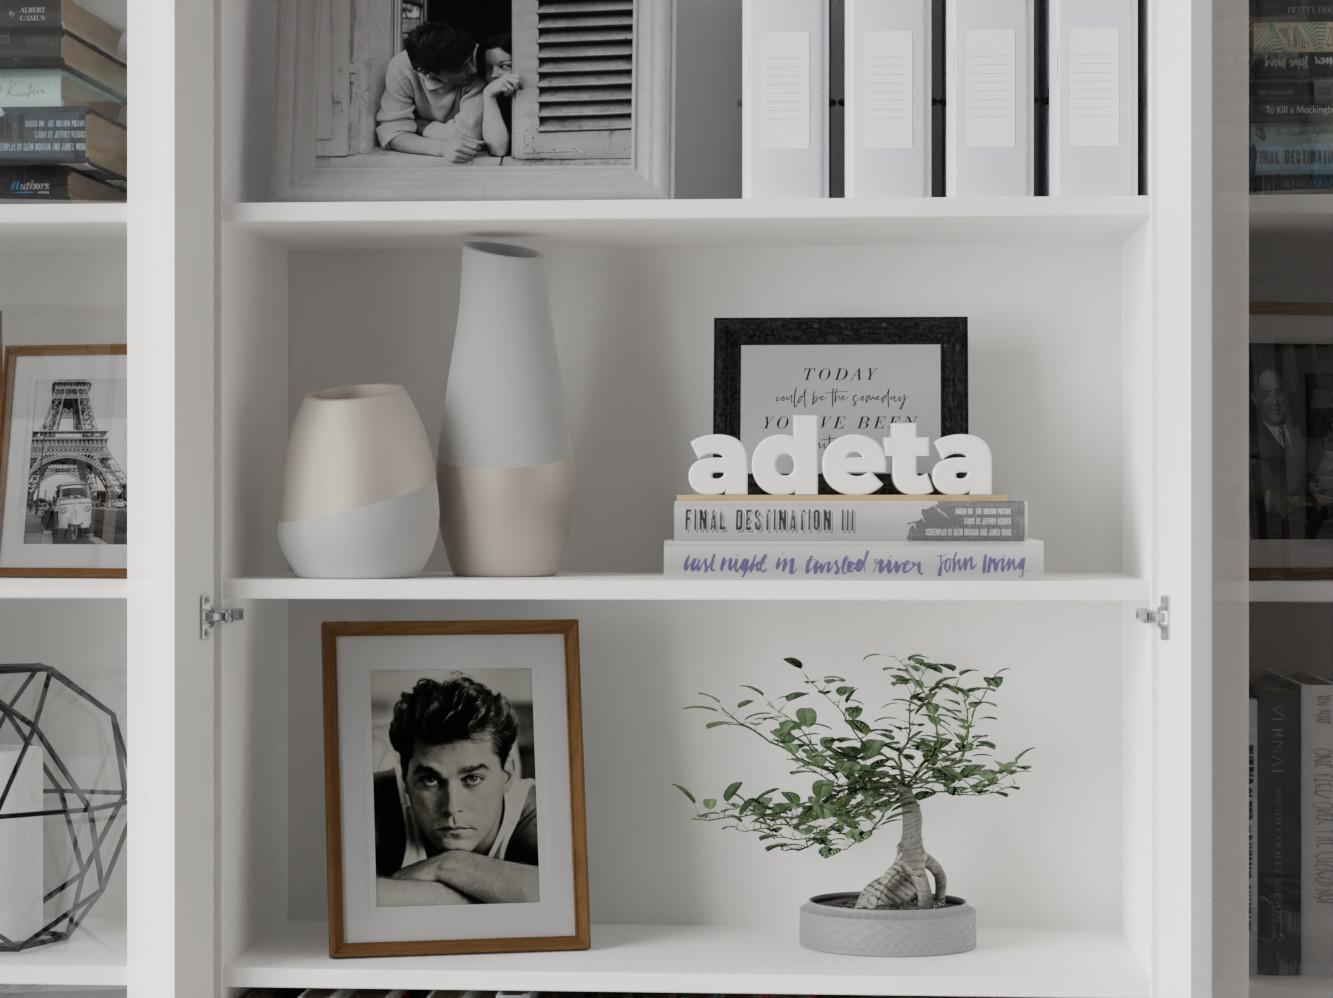 Изображение товара Книжный шкаф Билли 56 white ИКЕА (IKEA), 320x30x237 см на сайте adeta.ru